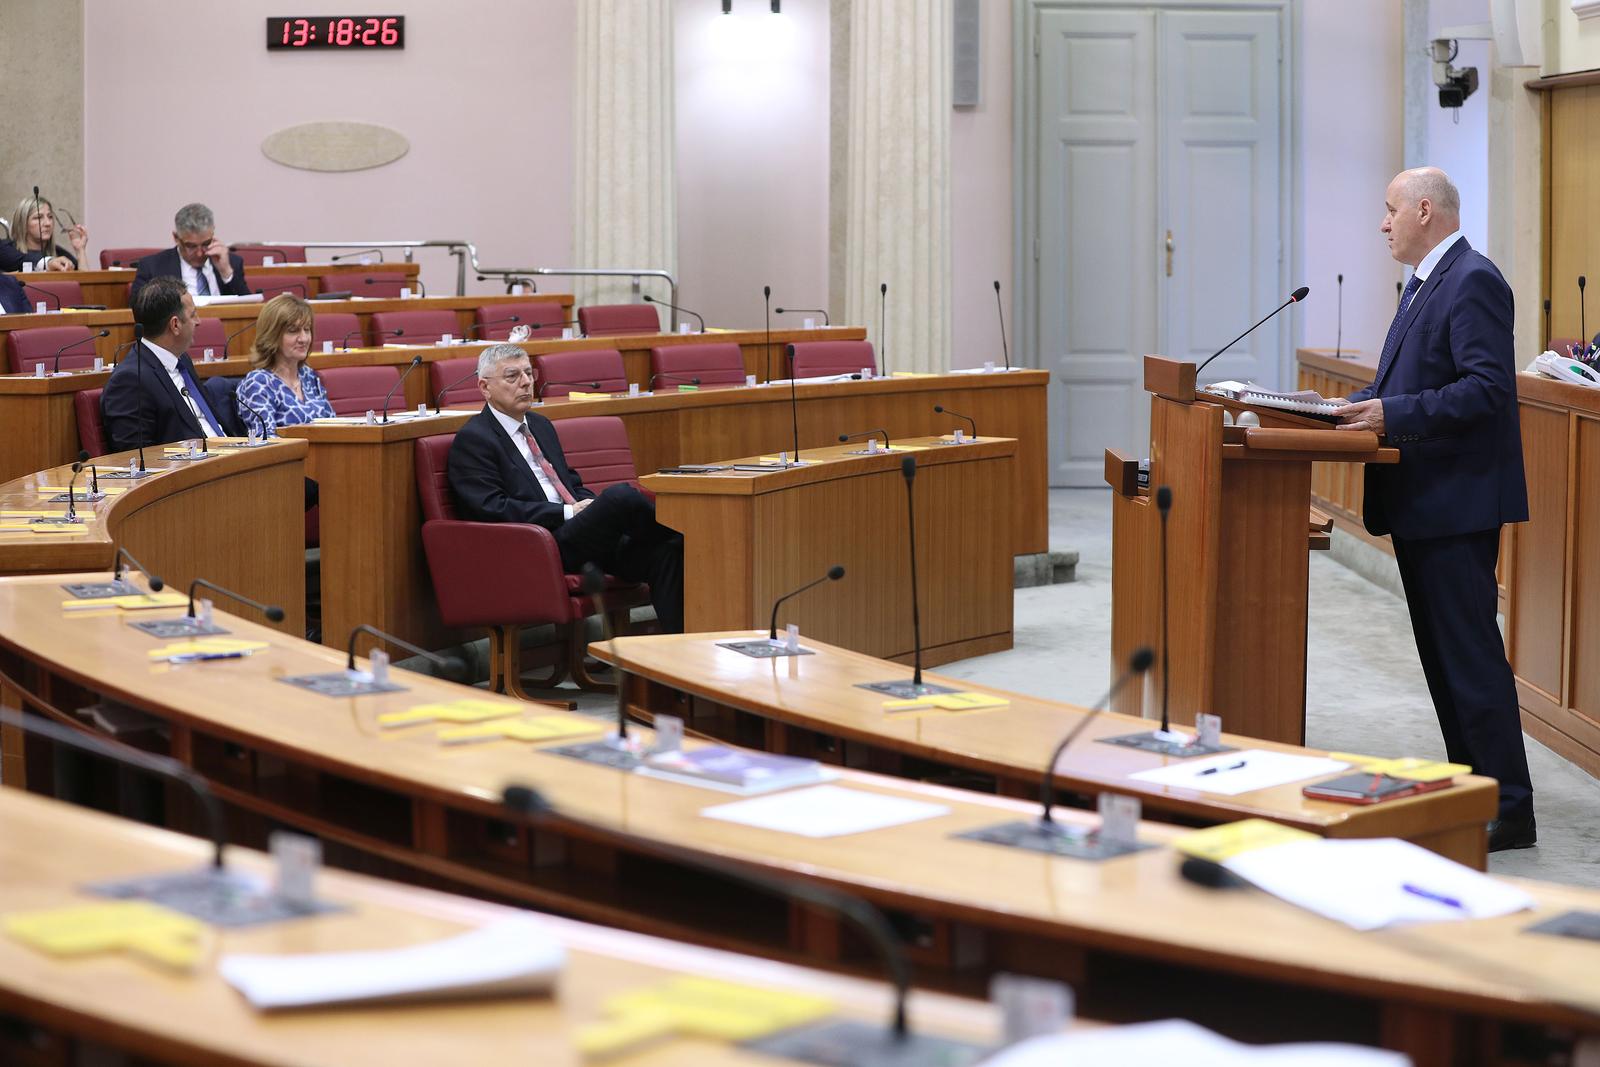 24.05.2023., Zagreb - Ministar Branko Bacic u Saboru obrazlaze izmjene zakon o prostornom planiranju. Photo: Patrik Macek/PIXSELL